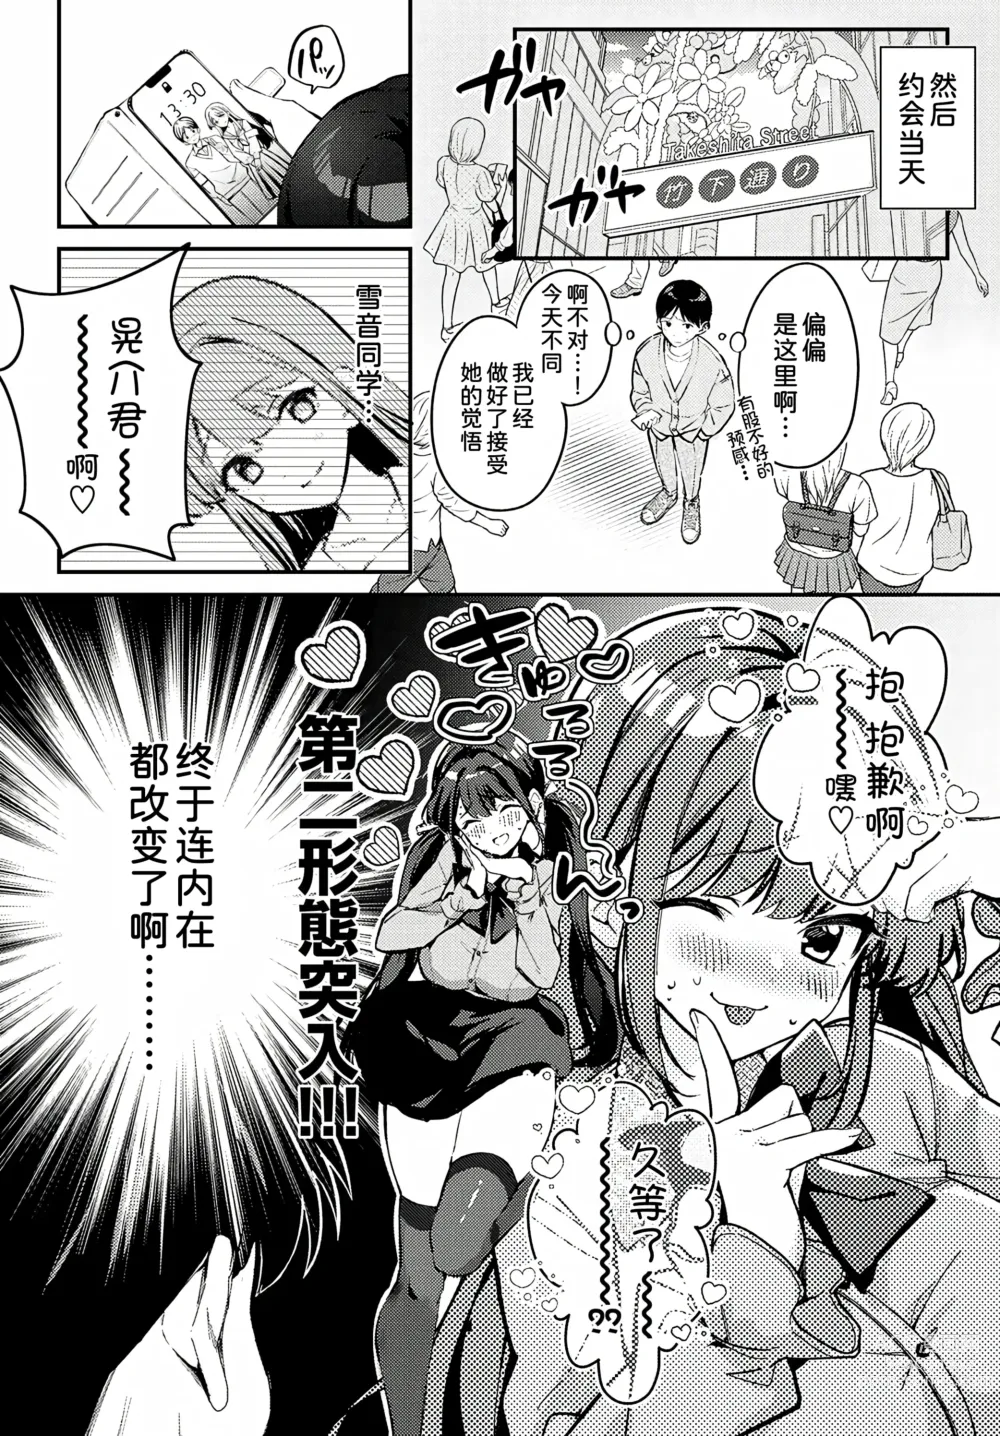 Page 7 of manga Jirai ni Naritai Yukine-san